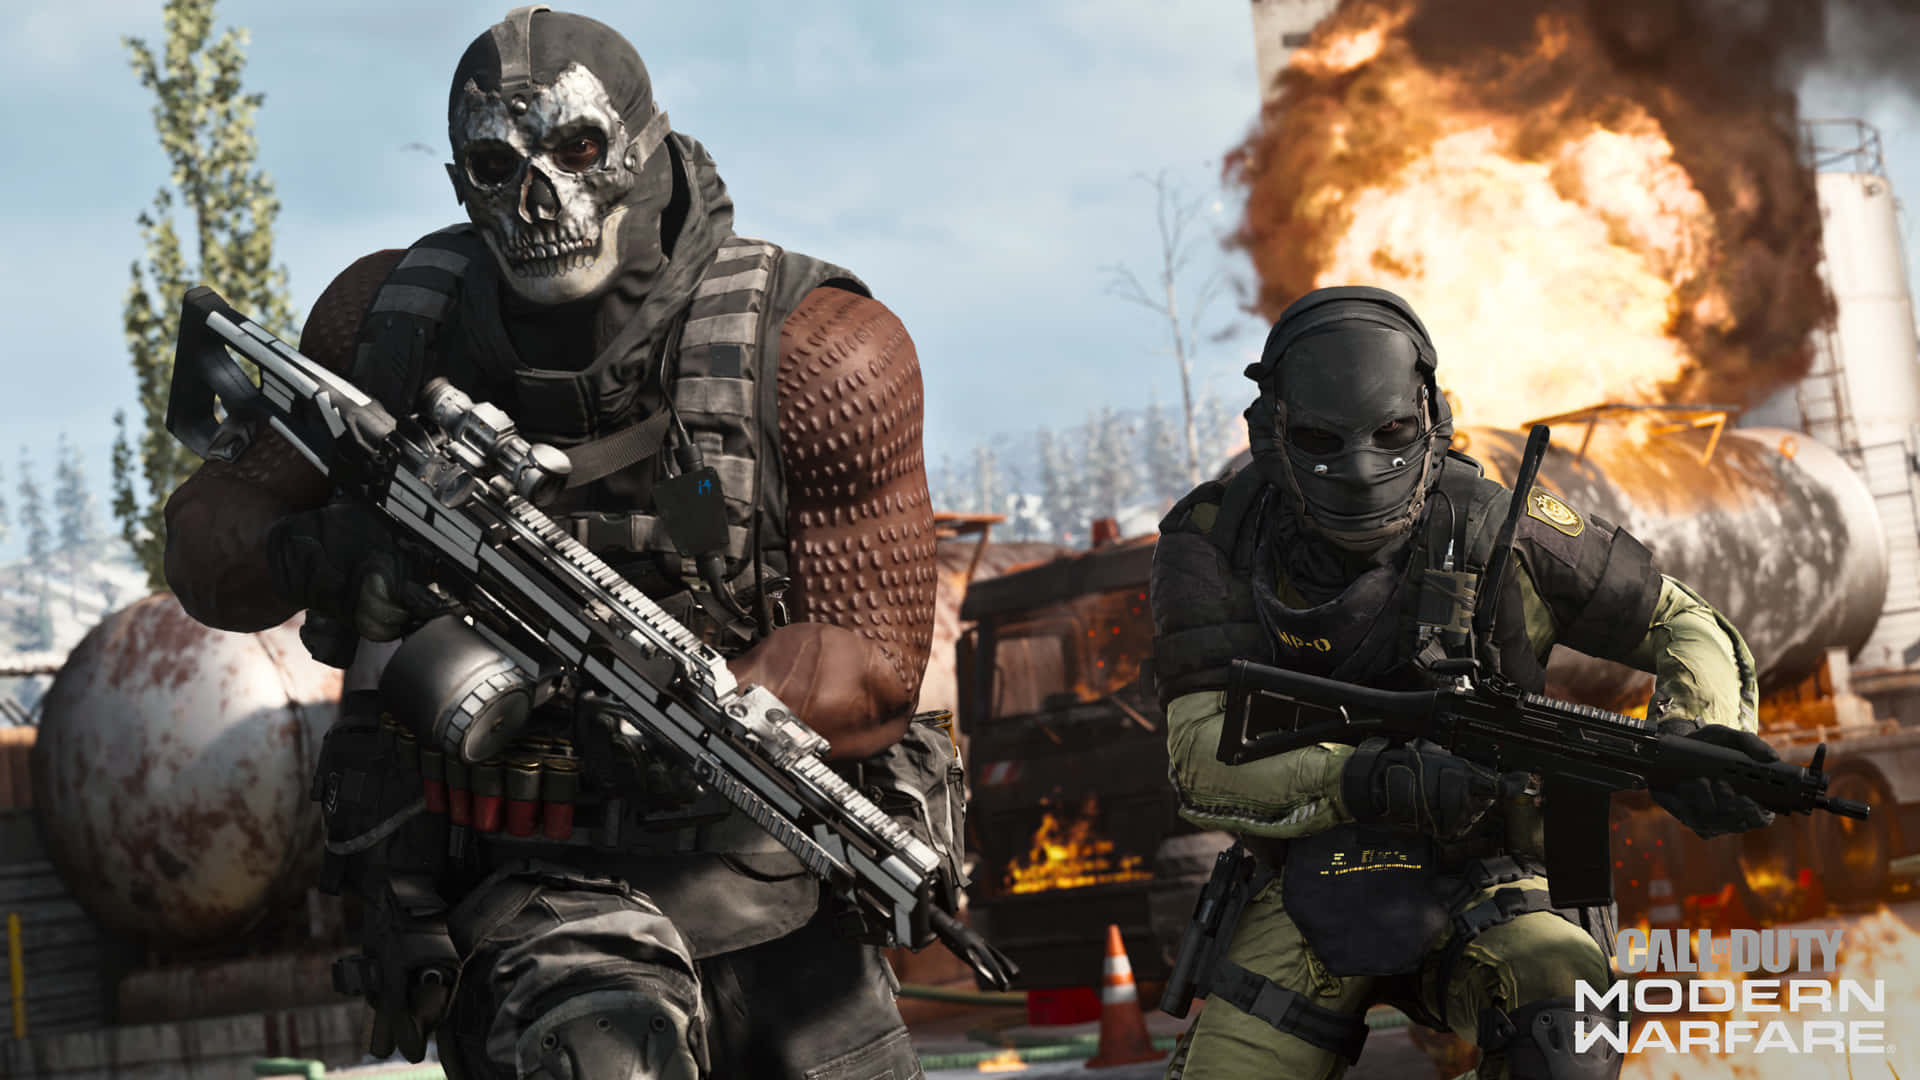 Åskandeoch Explosiv Eldstorm Av Action I Call Of Duty Modern Warfare.